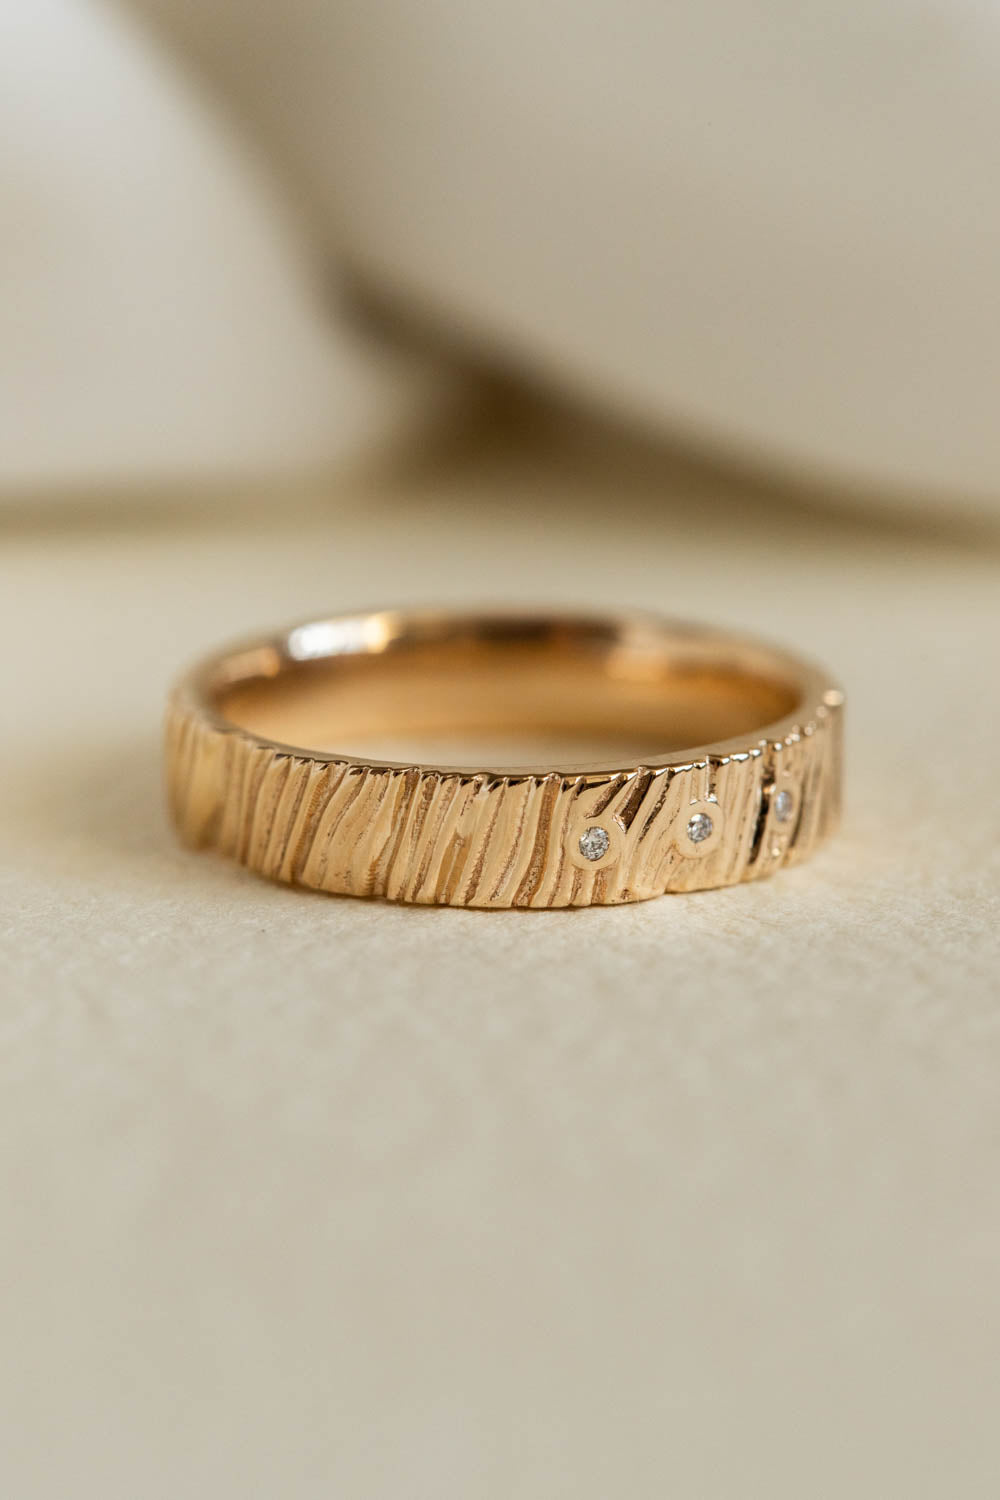 Wood textured wedding ring with gemstones, 4 mm wedding band - Eden Garden Jewelry™